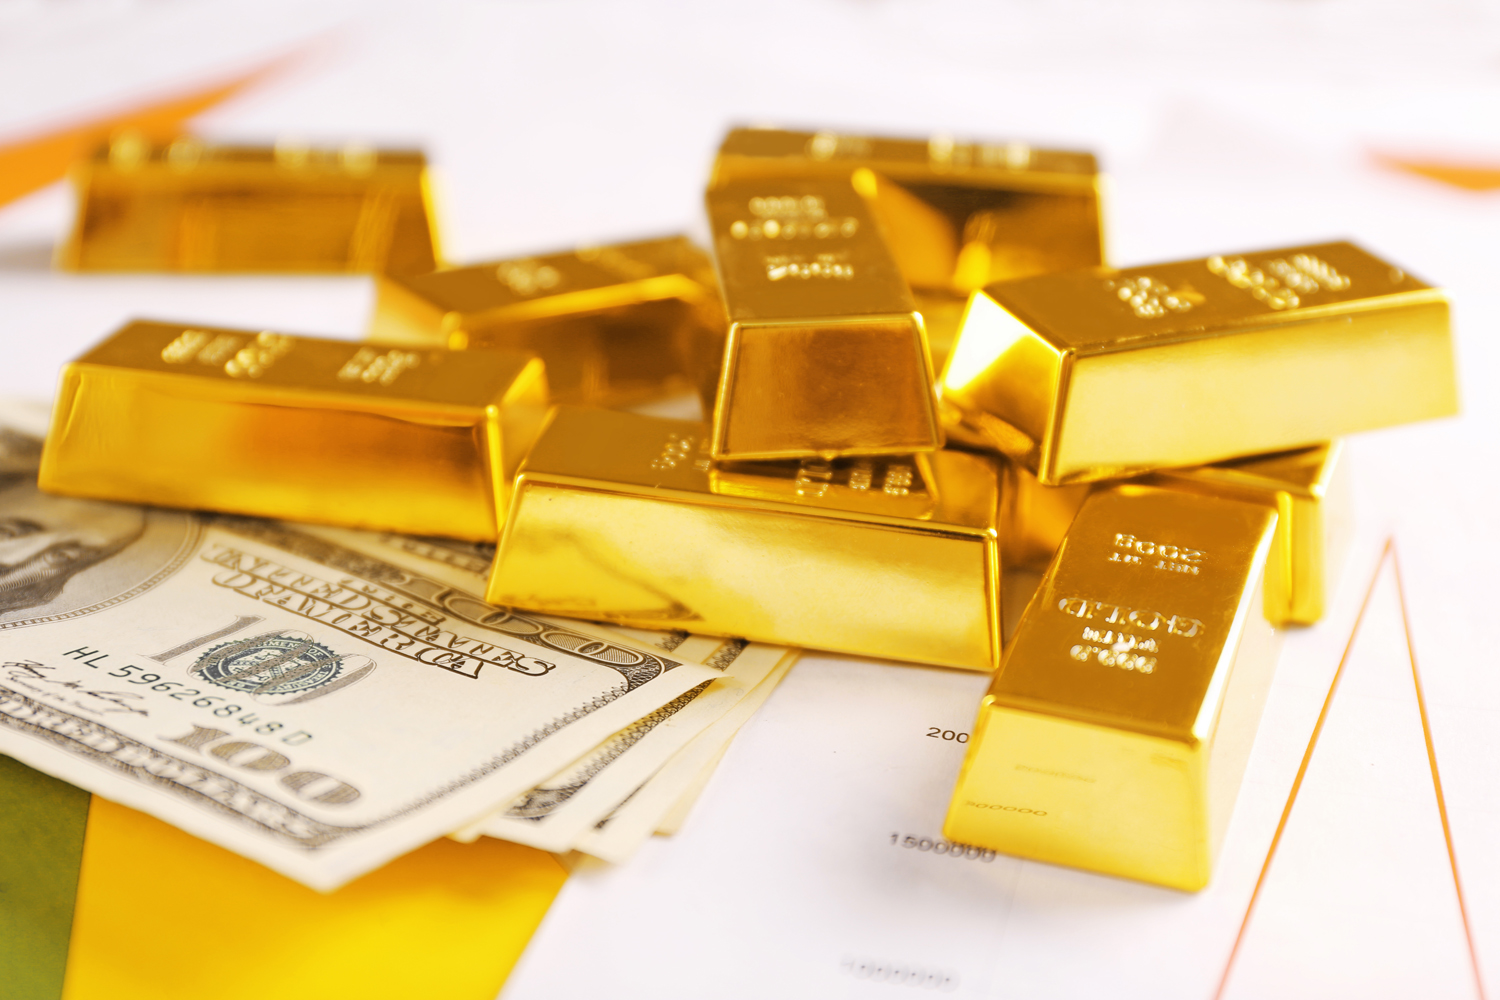 الذهب يرتفع لأعلى مستوى في 6 أشهر مسجلا 1875 دولارا للأونصة